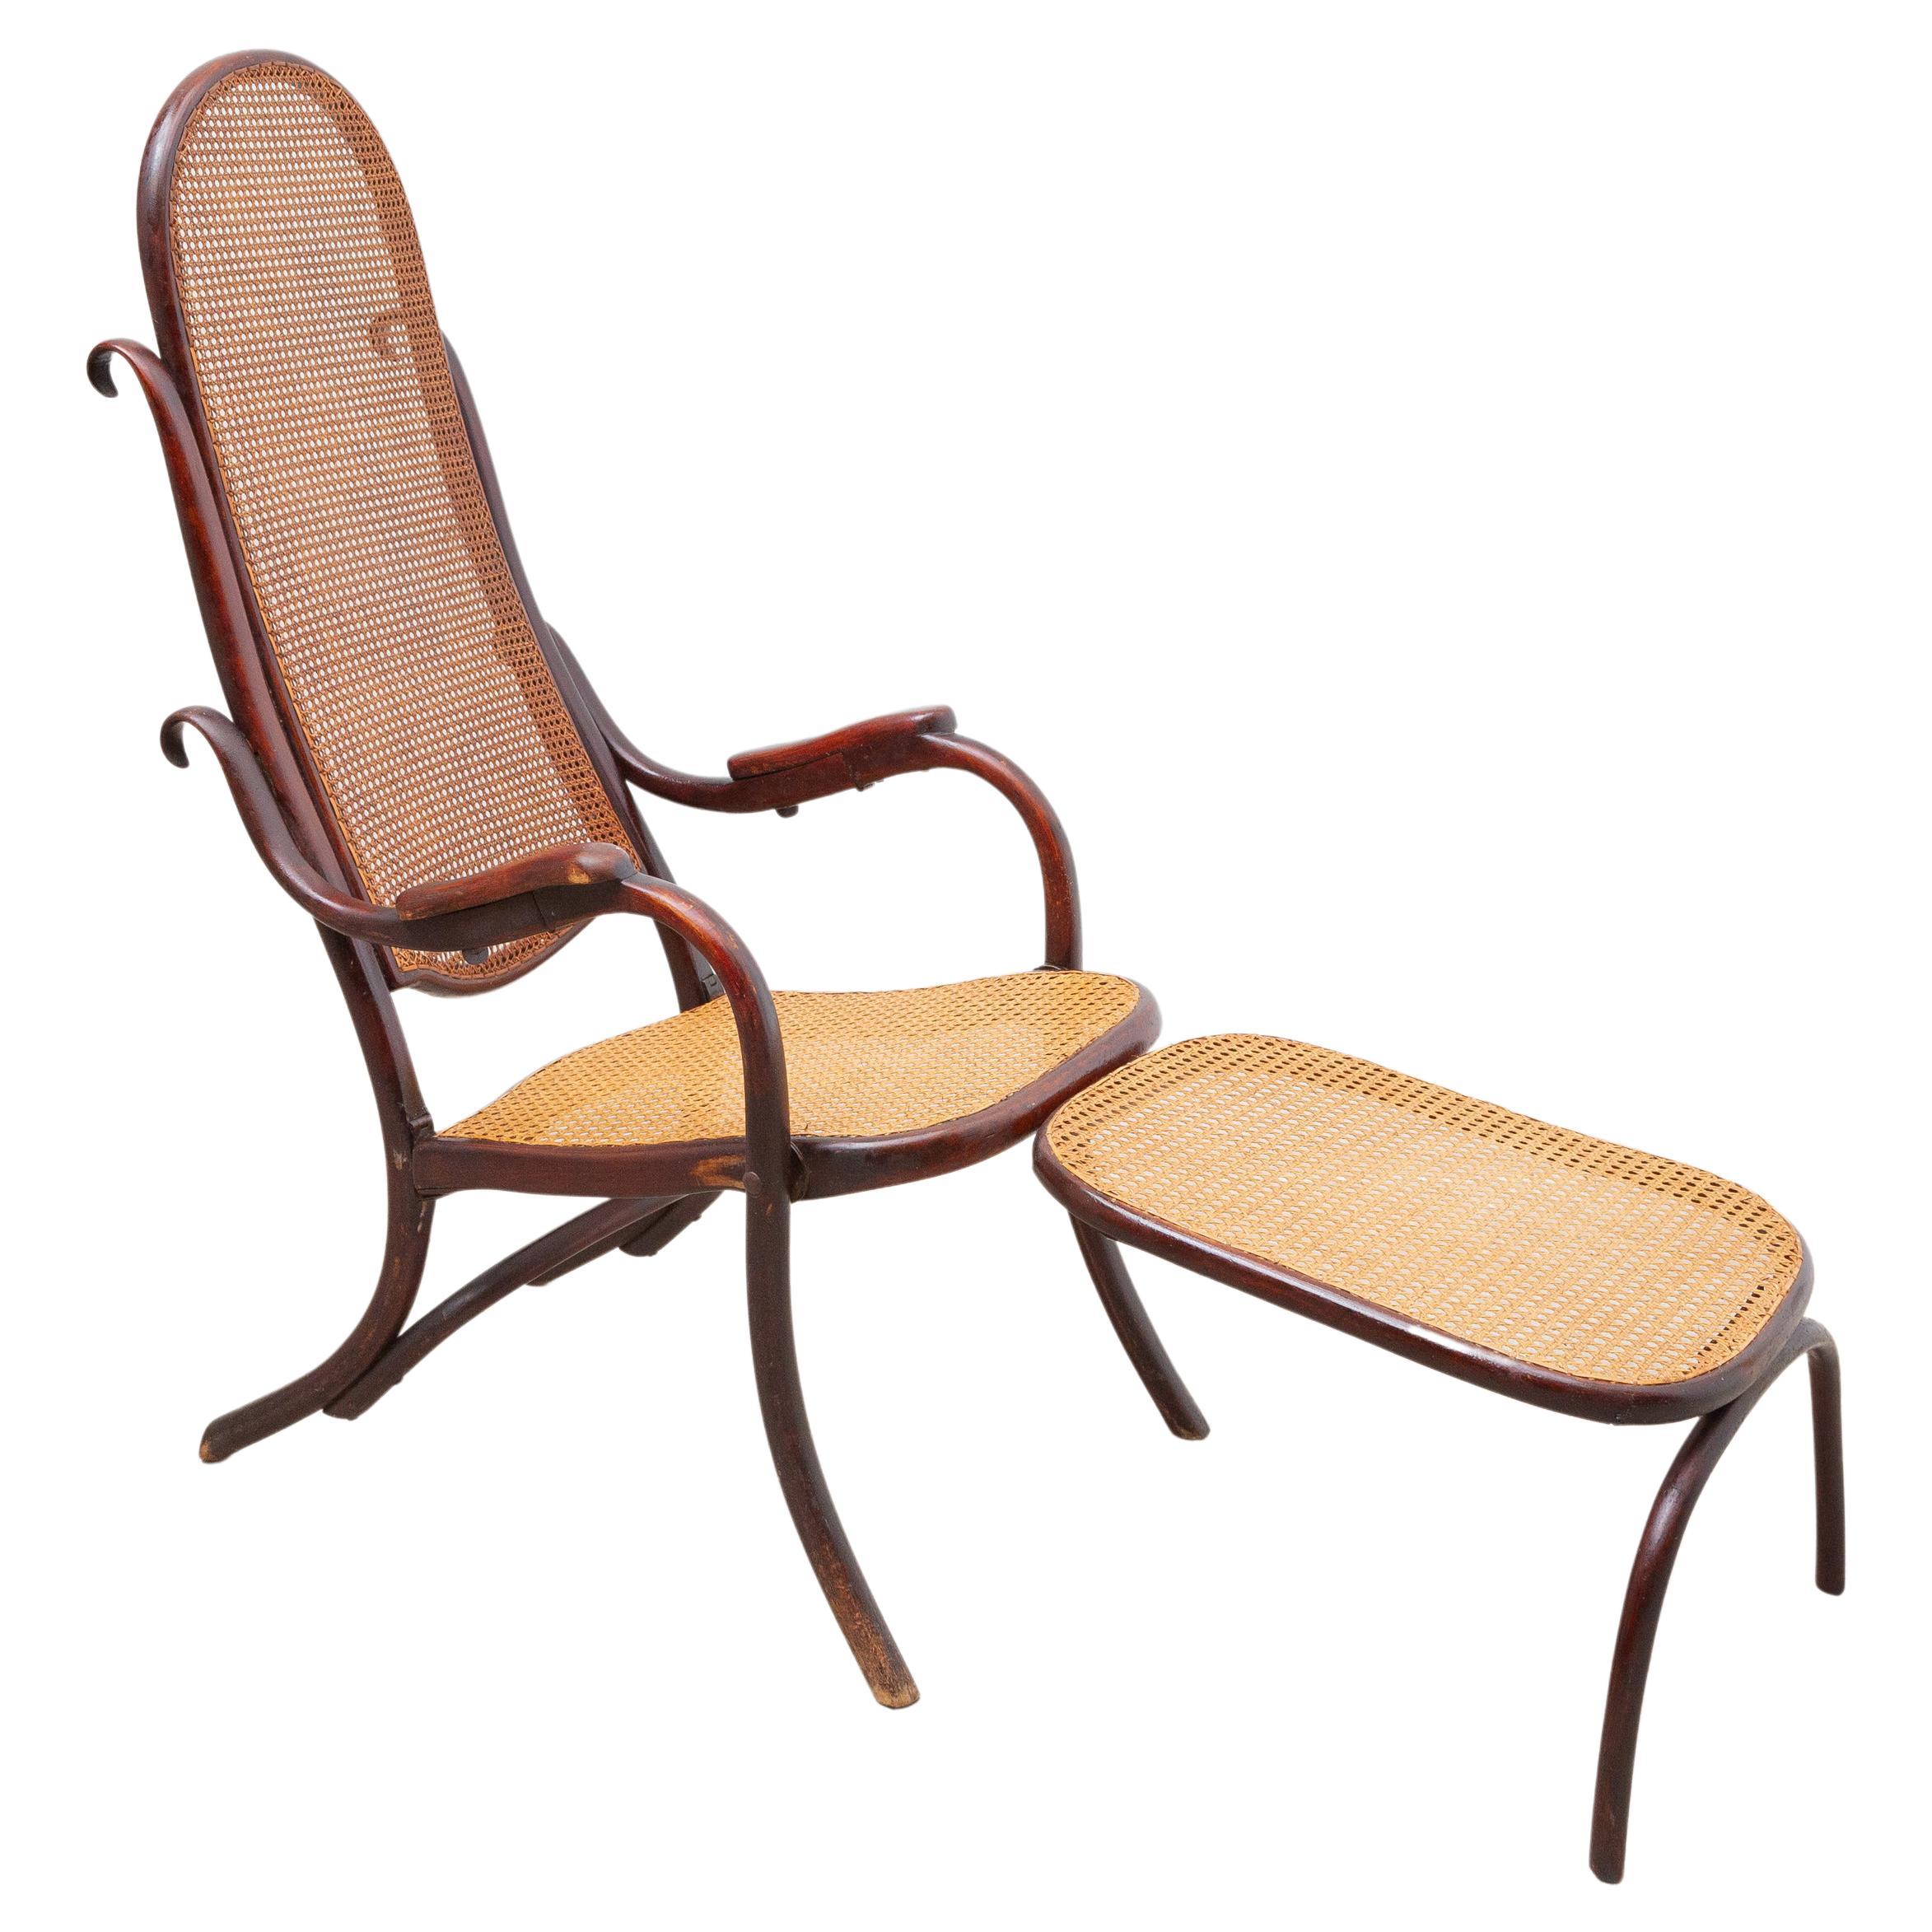 Chaise longue pliante de Thonet avec pouf réglable 19ème siècle